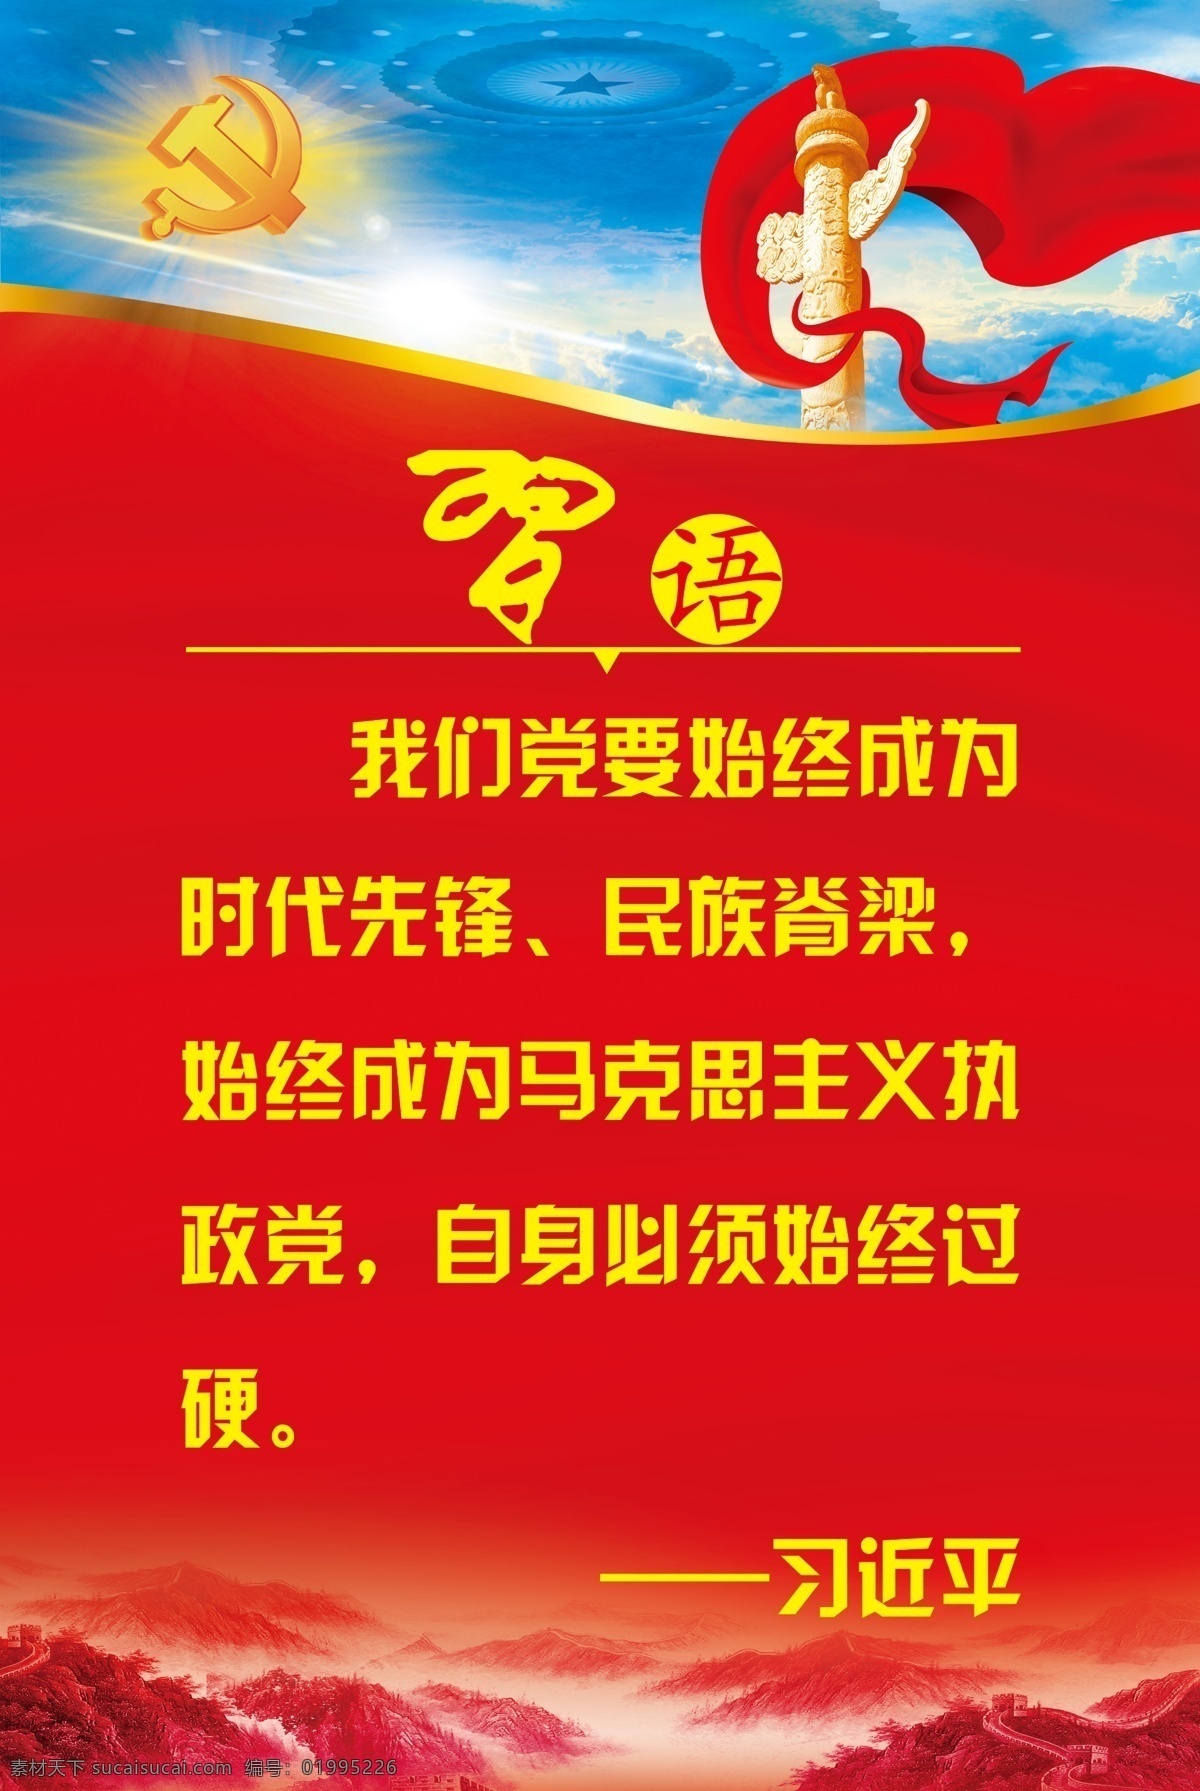 习语 十九大 马克思主义 中国梦 党建文化 分层